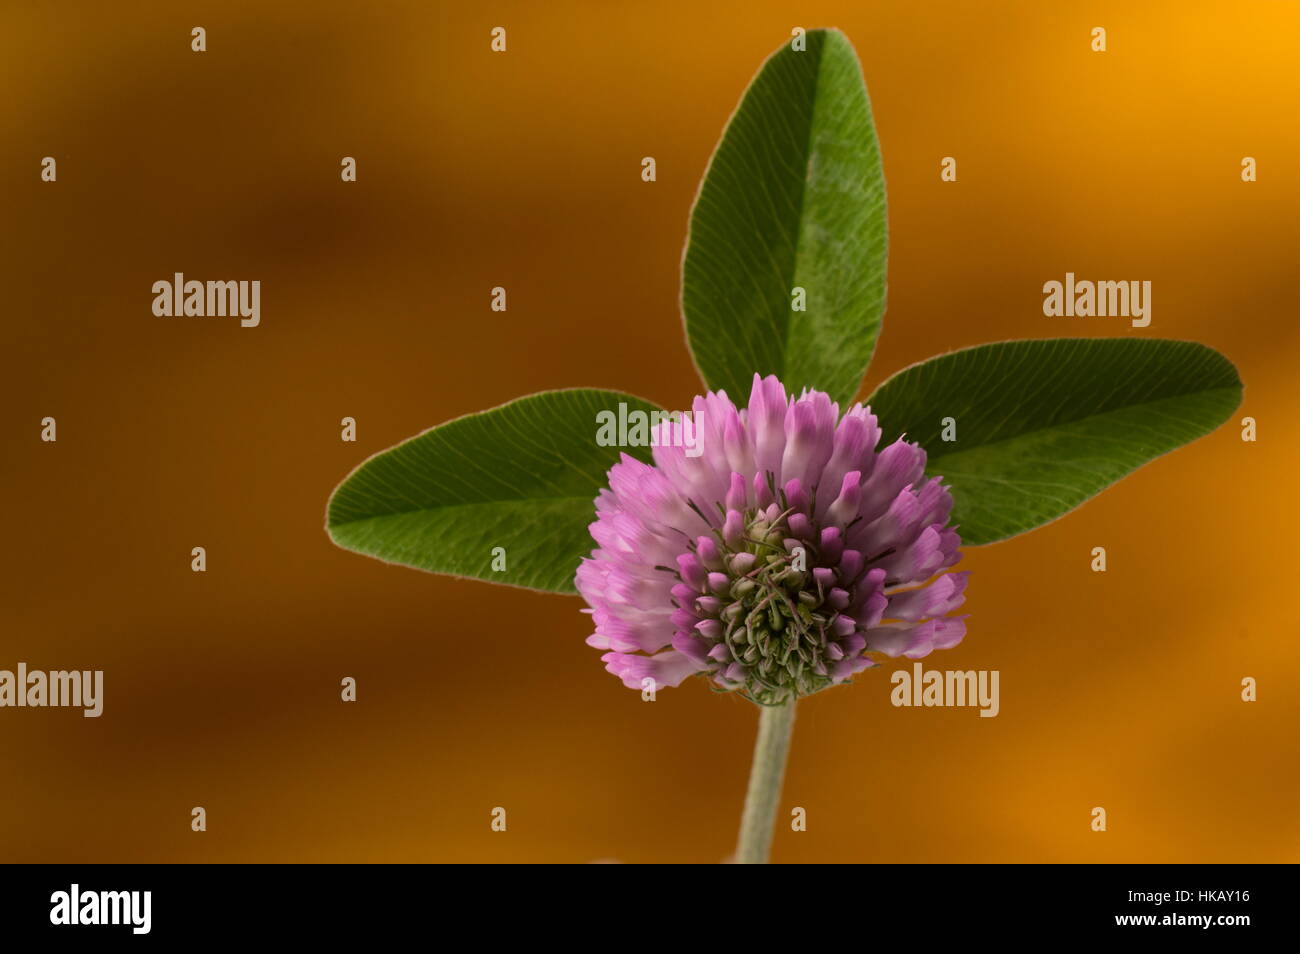 Trois printemps leaf clover pétale contre modèle fond orange. Selective focus sur le pétale. Banque D'Images